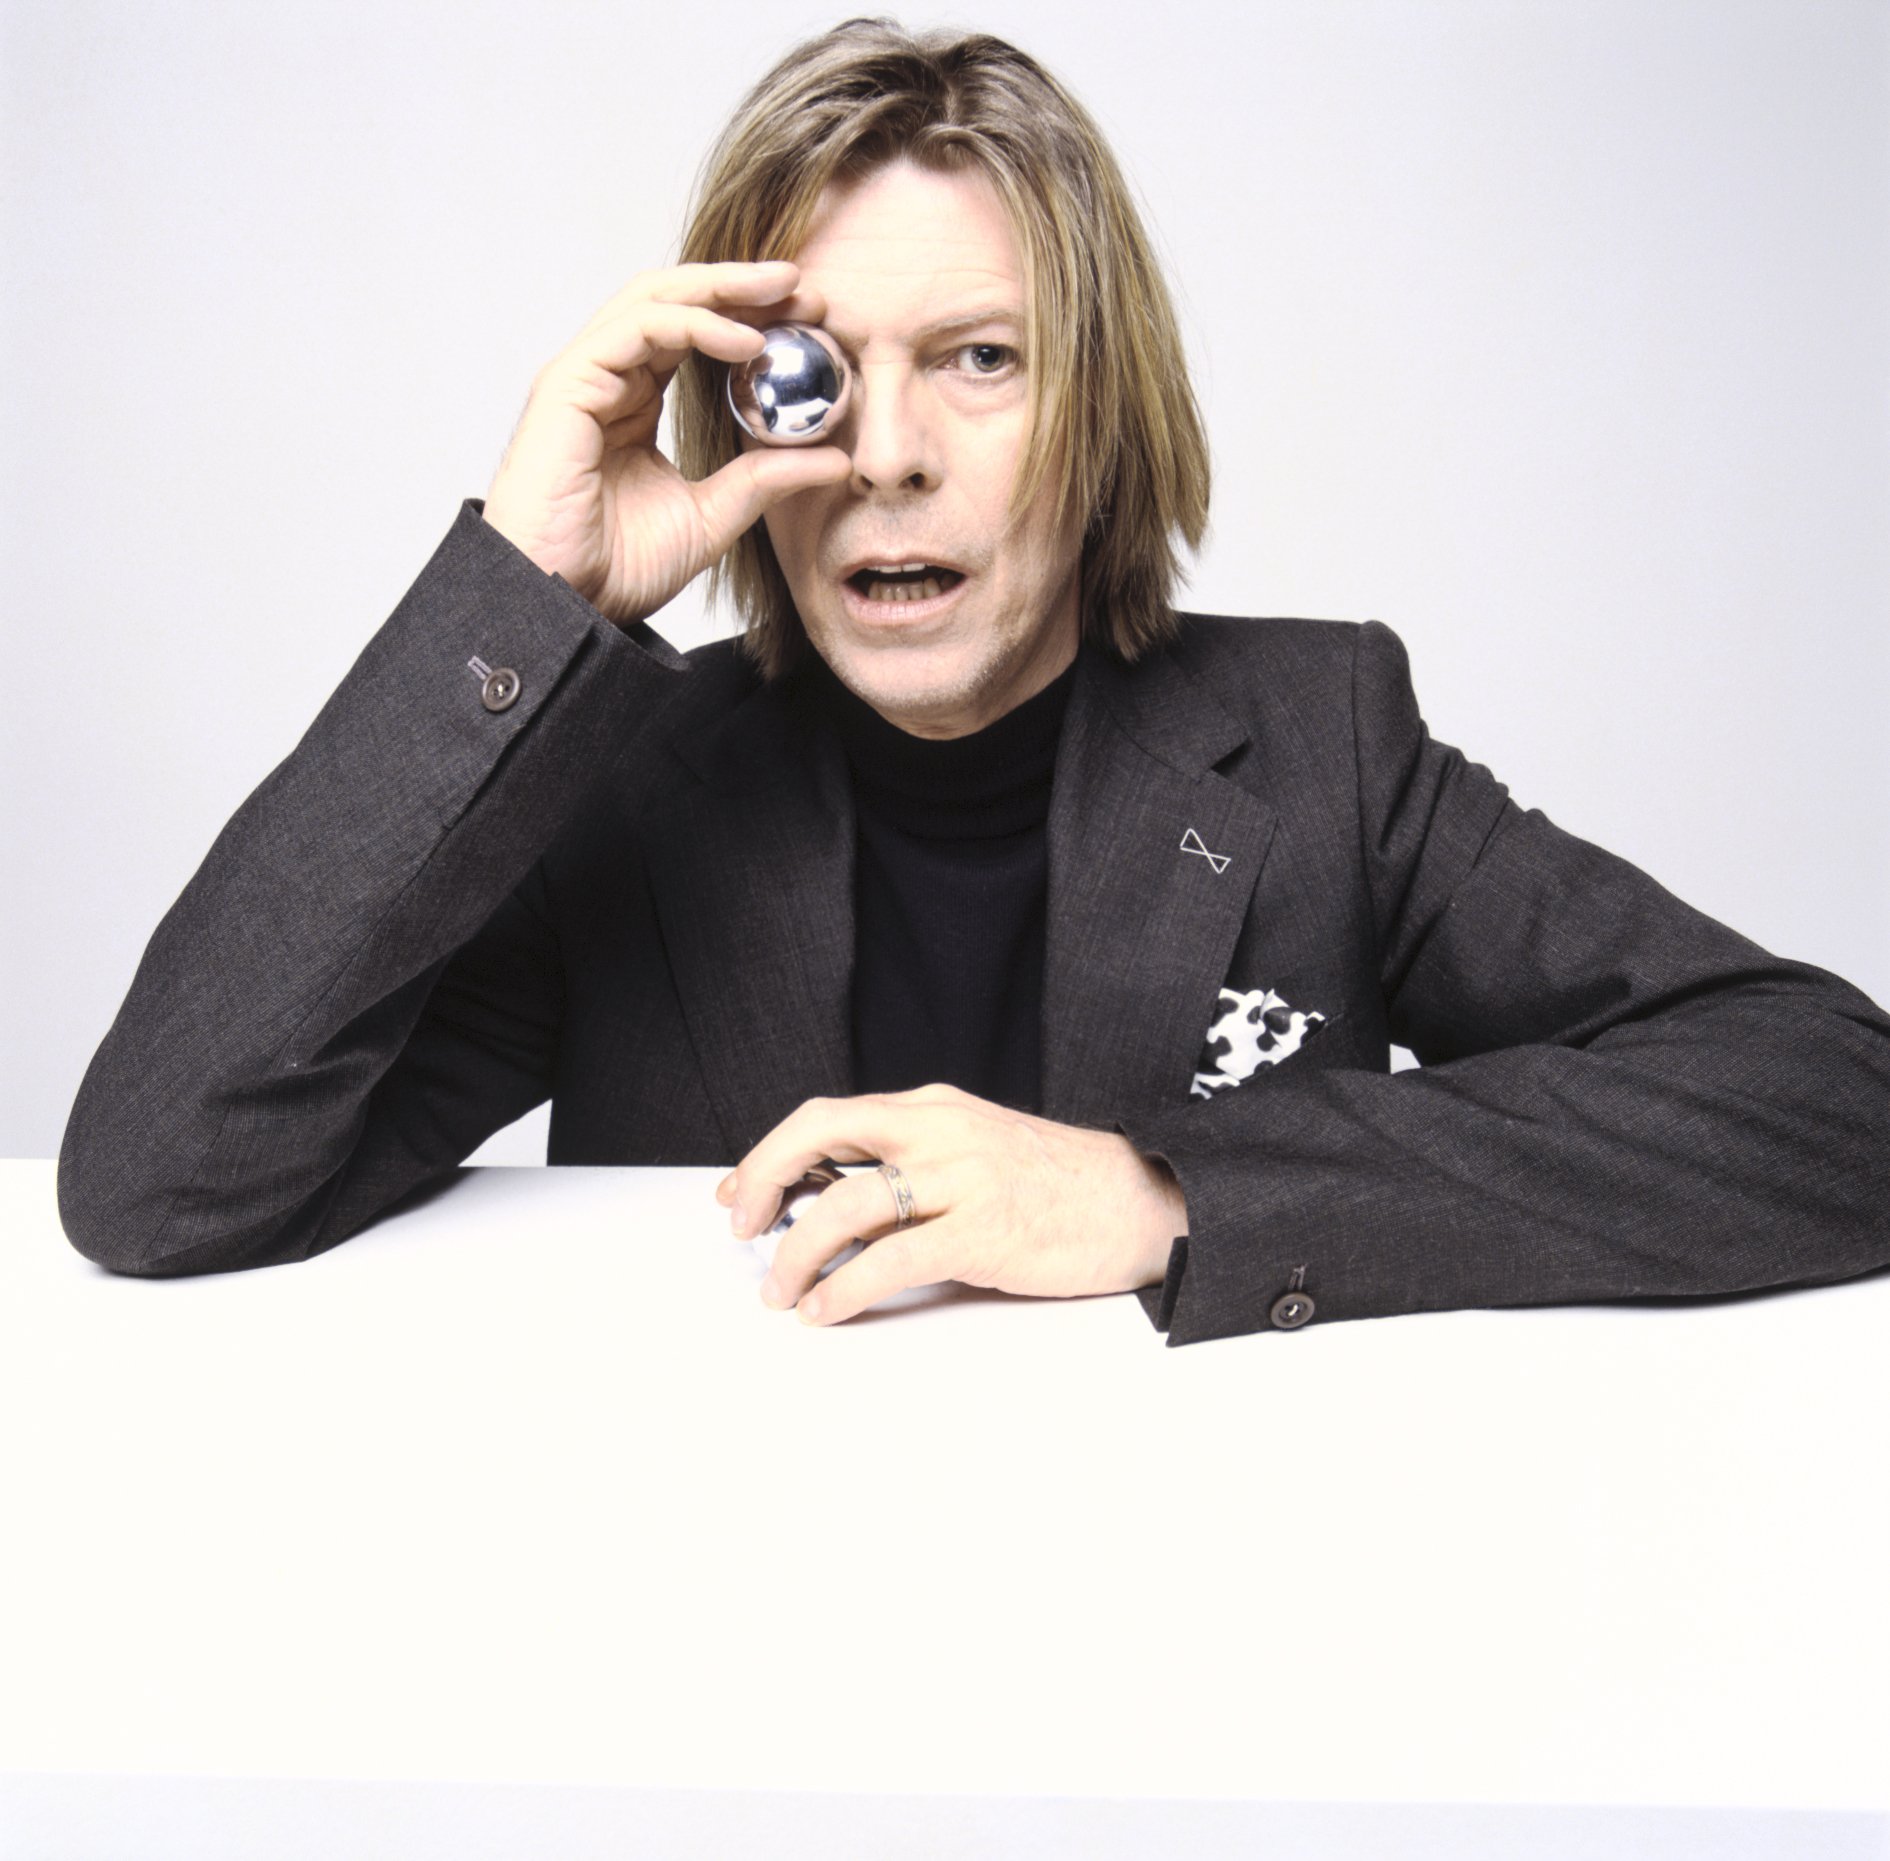 Bowie2002_5(c)mickrock.jpg